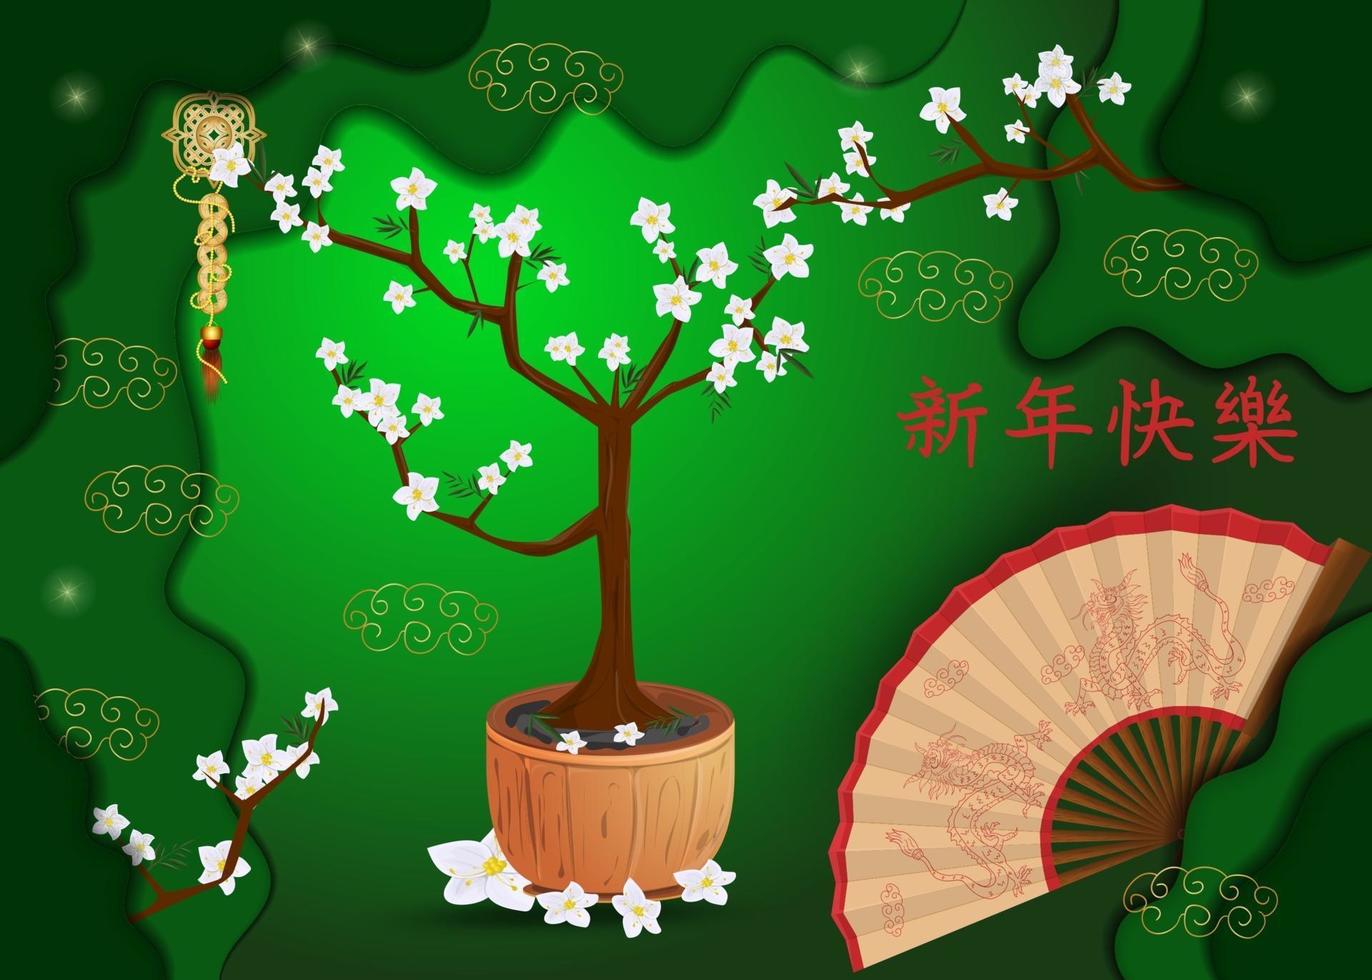 kinesiska nyår gratulationskort design vektor